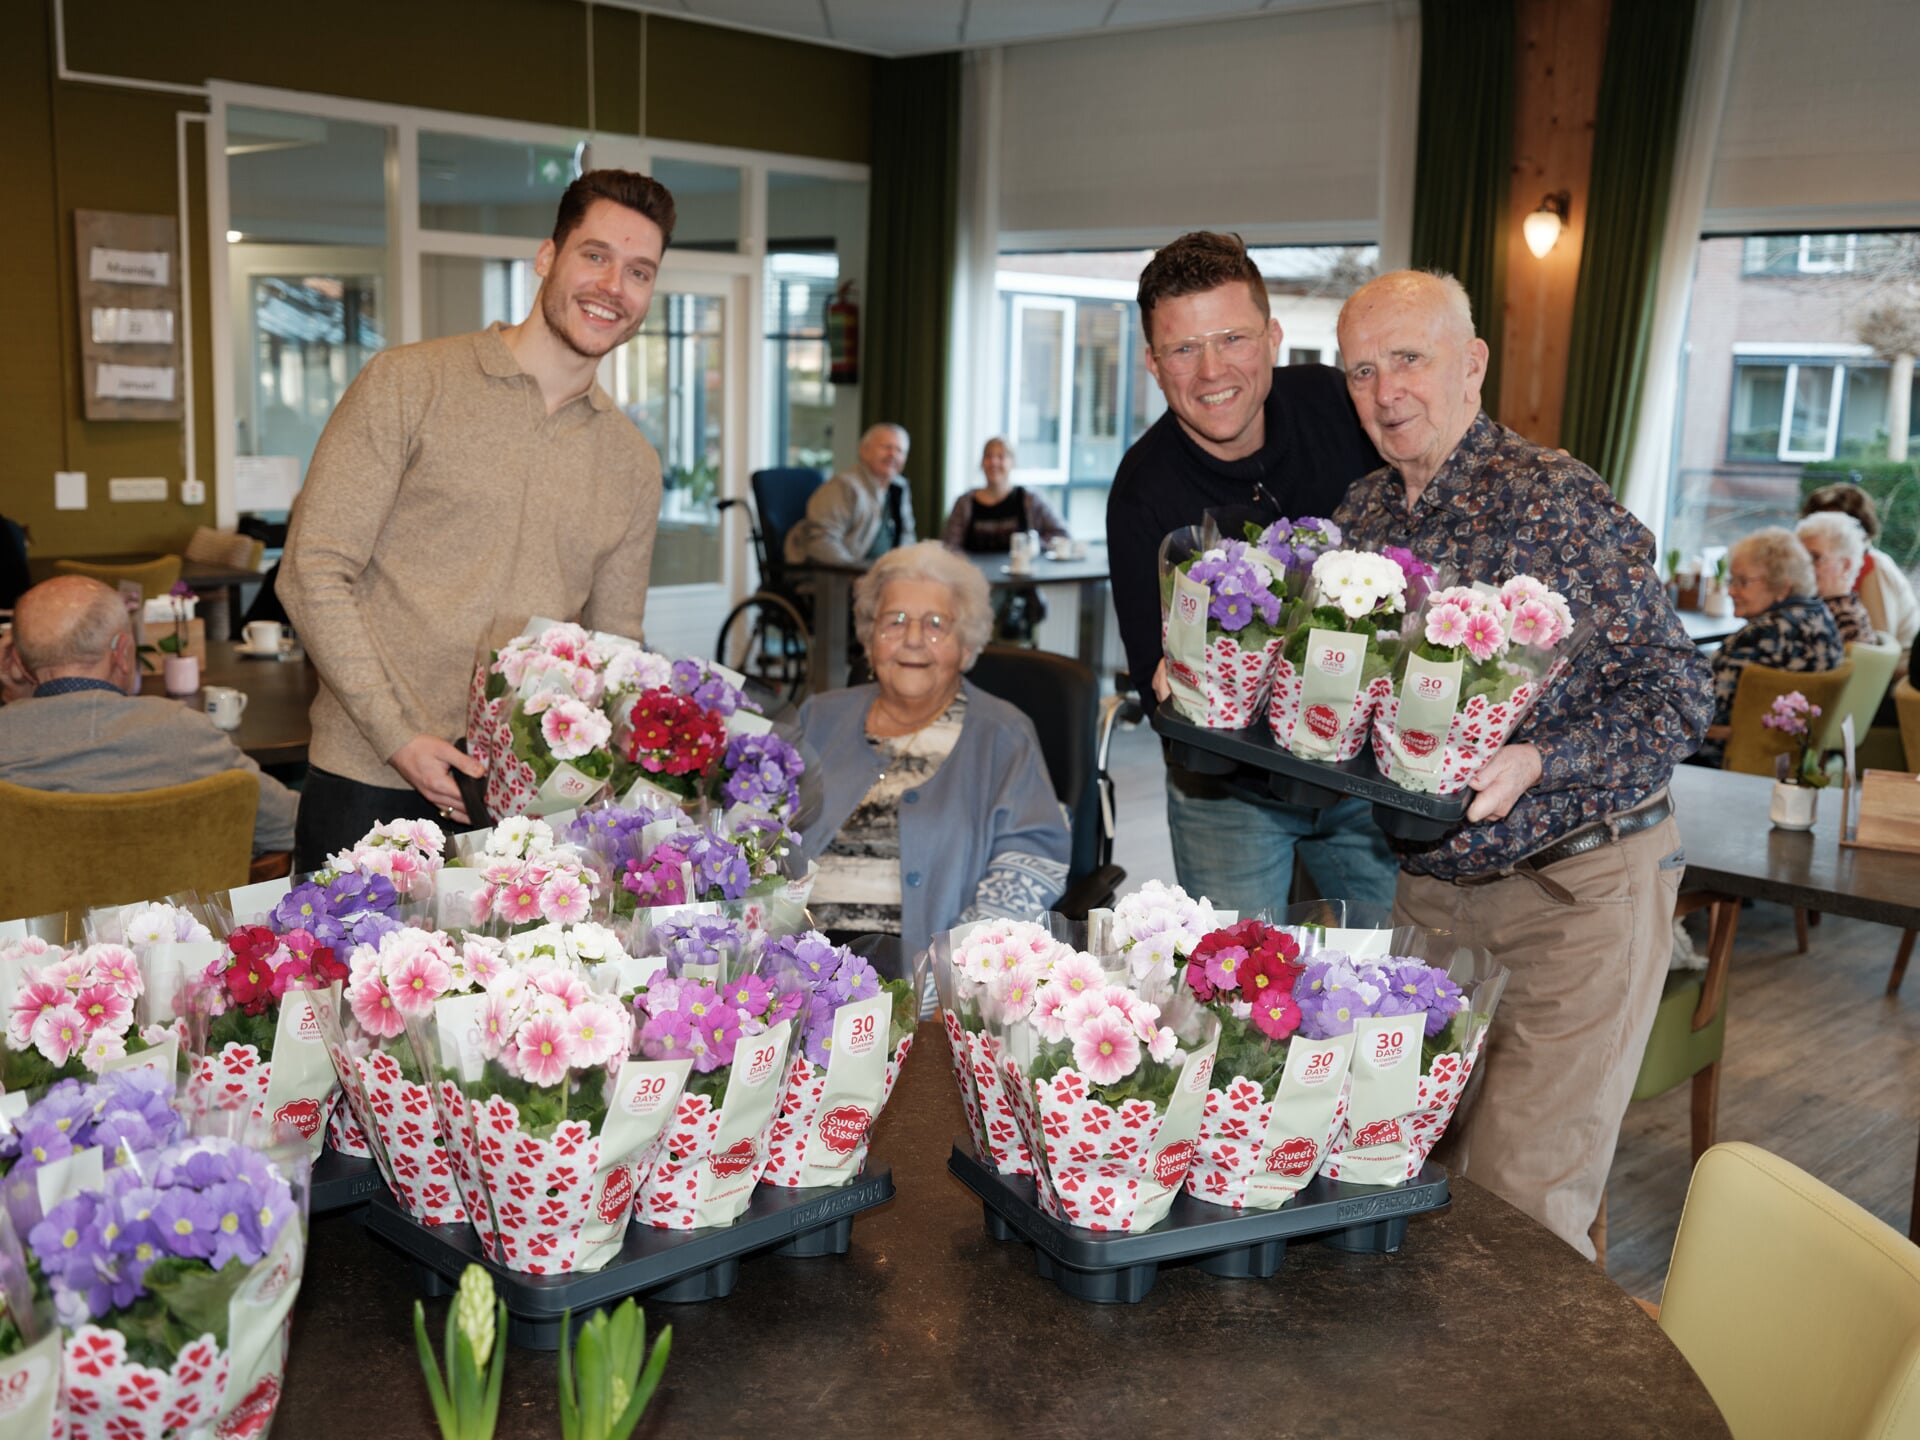 Om iets positiefs bij te dragen aan de maatschappij doneert telersvereniging Sweet Kisses jaarlijks planten; dit jaar bij bewoners van zorginstelling Pieter van Foreest.  